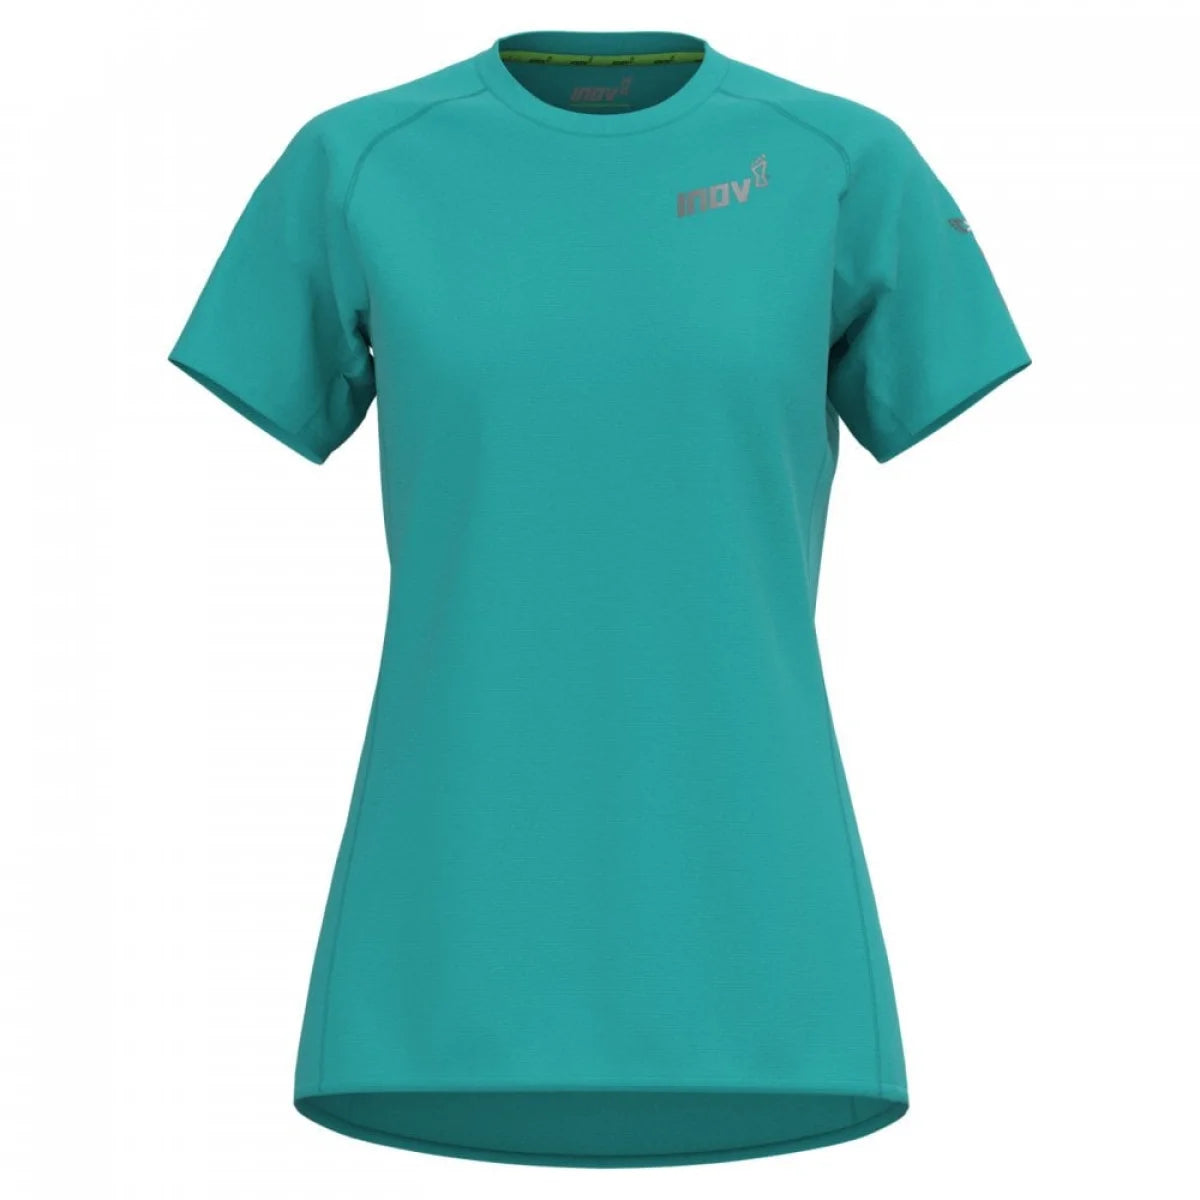 Women's Inov-8 Base Elite Short Sleeve T-Shirt